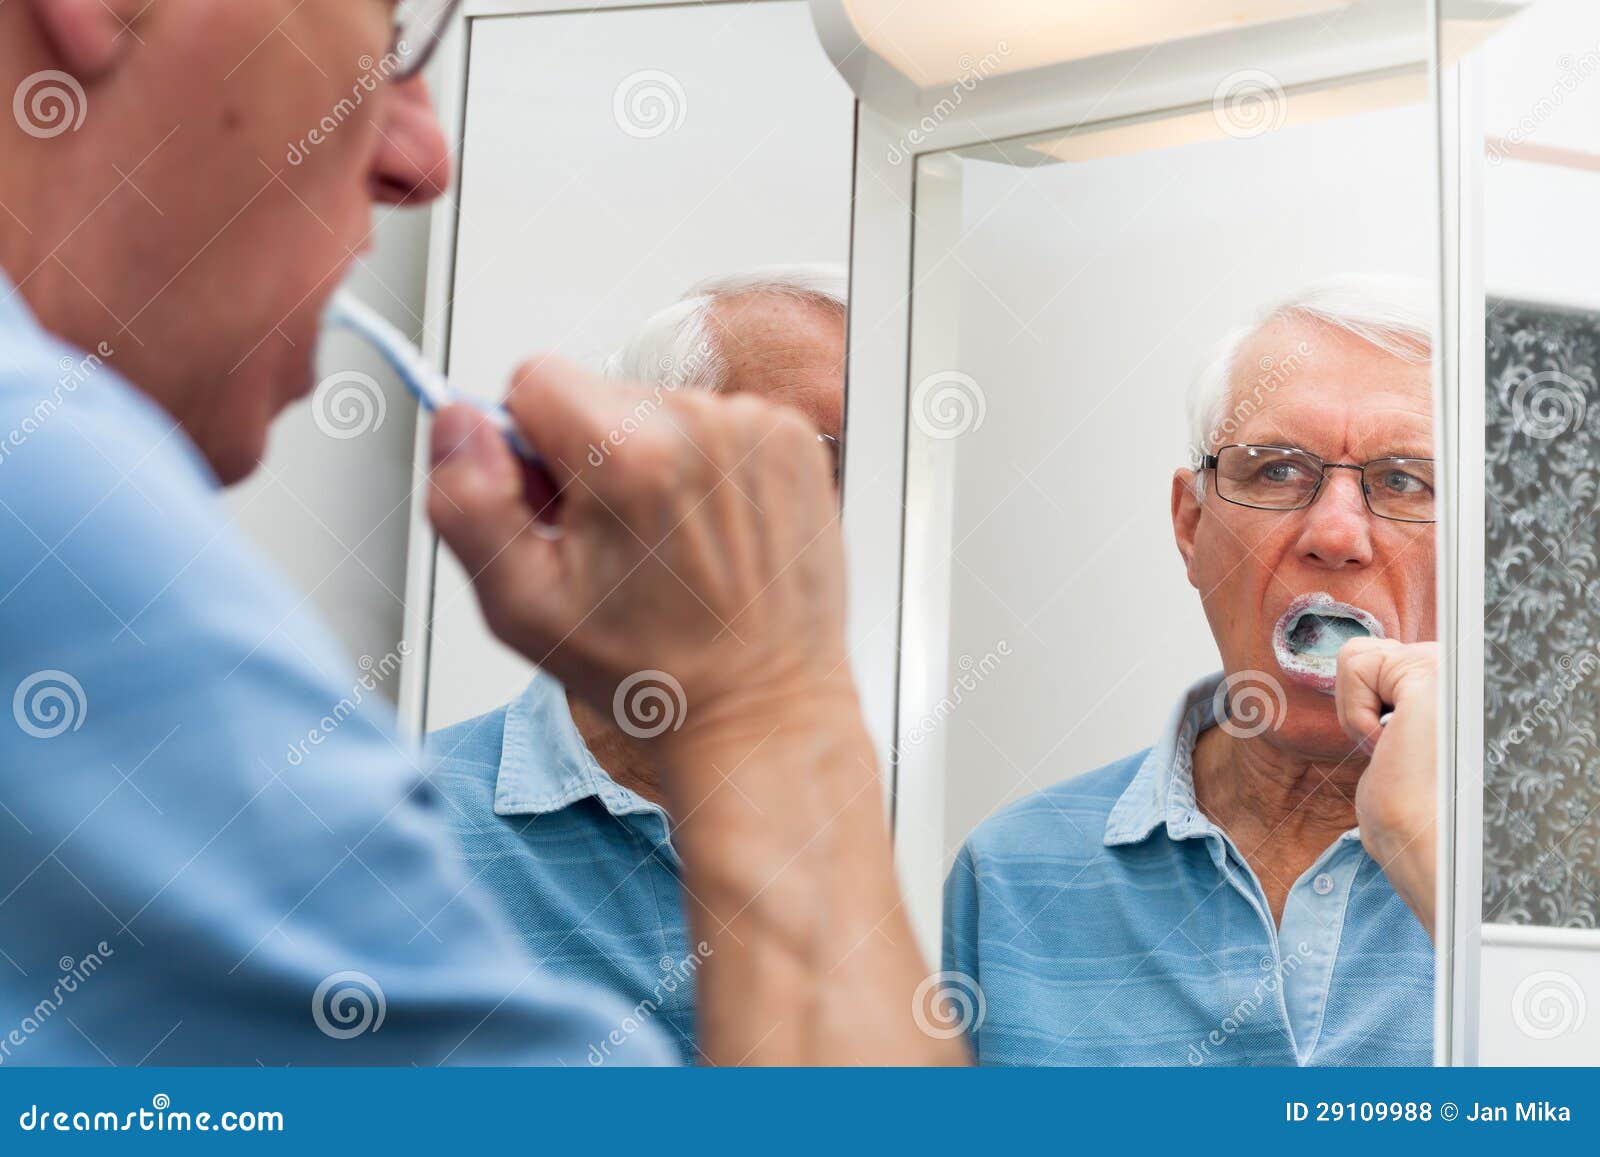 senior man in mirror brushing his teeth